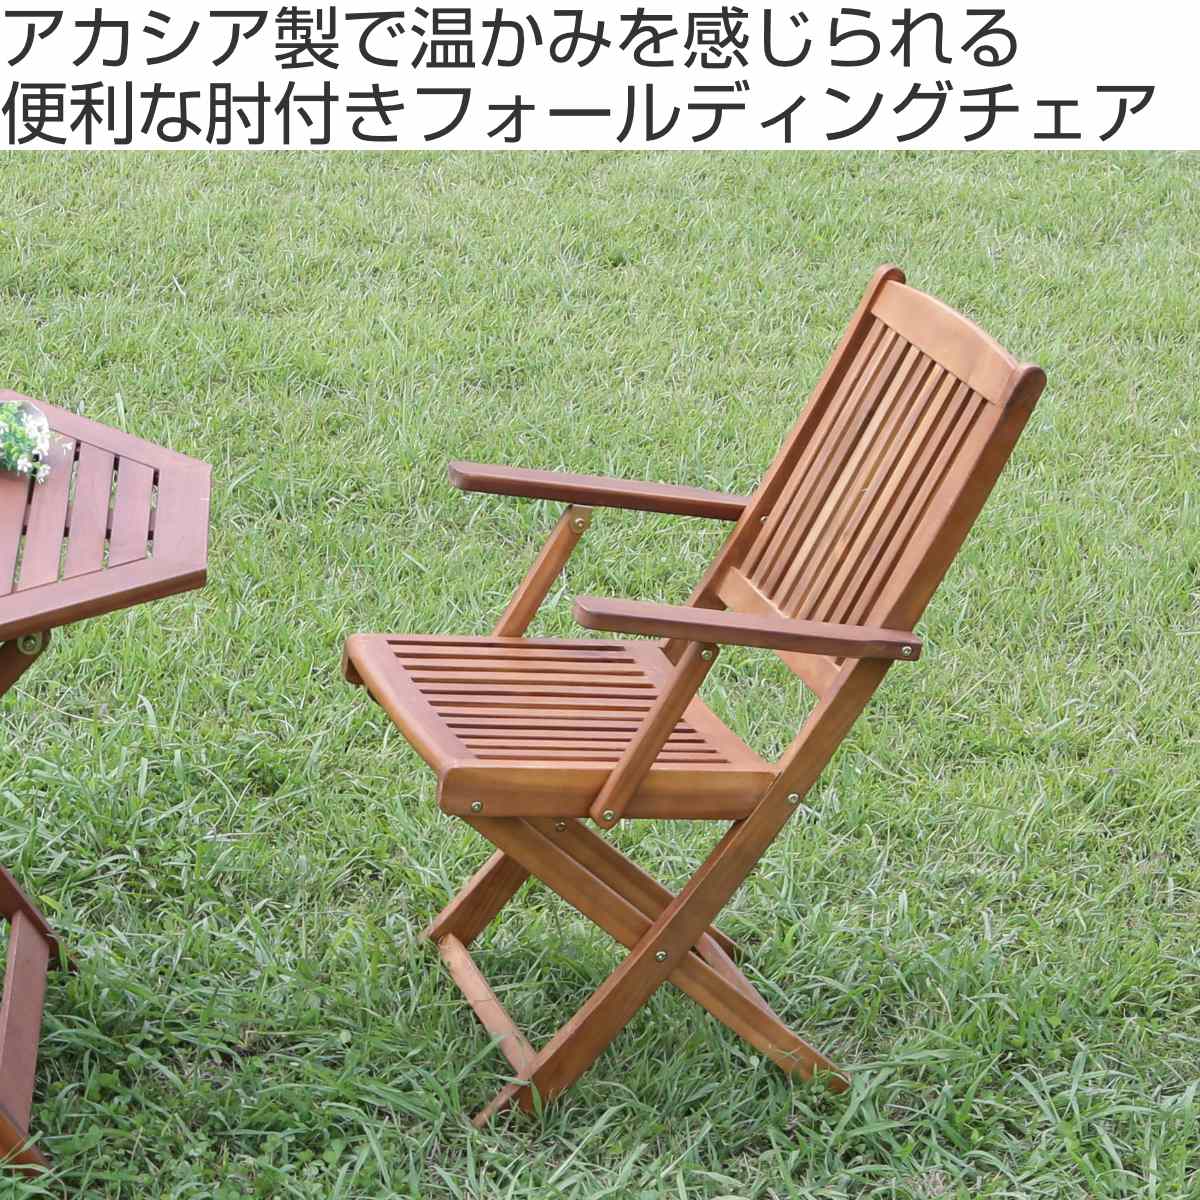 木製 折りたたみチェア ガーデンチェア 肘置き付き 2脚セット新品購入後屋外で3回使用